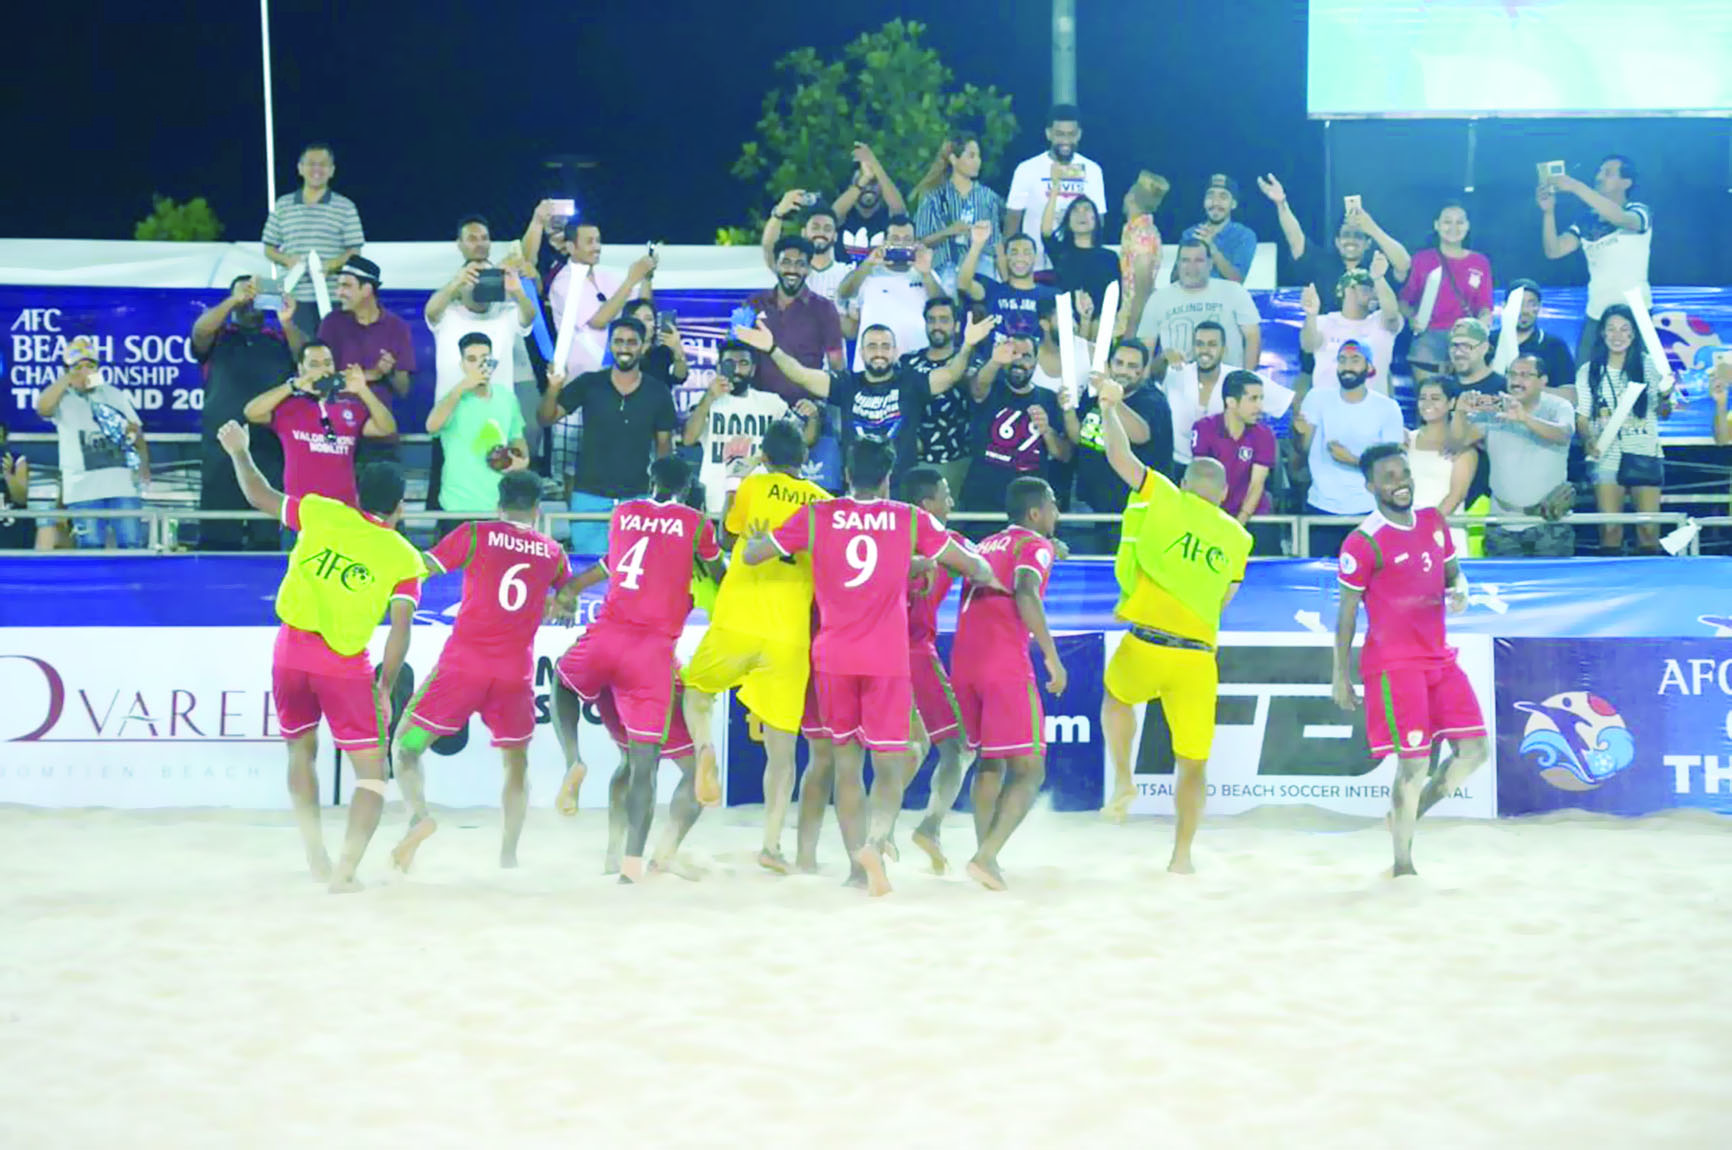 في بطولة آسيا لكرة القدم الشاطئية
أحمر الشواطئ عينه على المربع الذهبي عبر بوابة البحرين